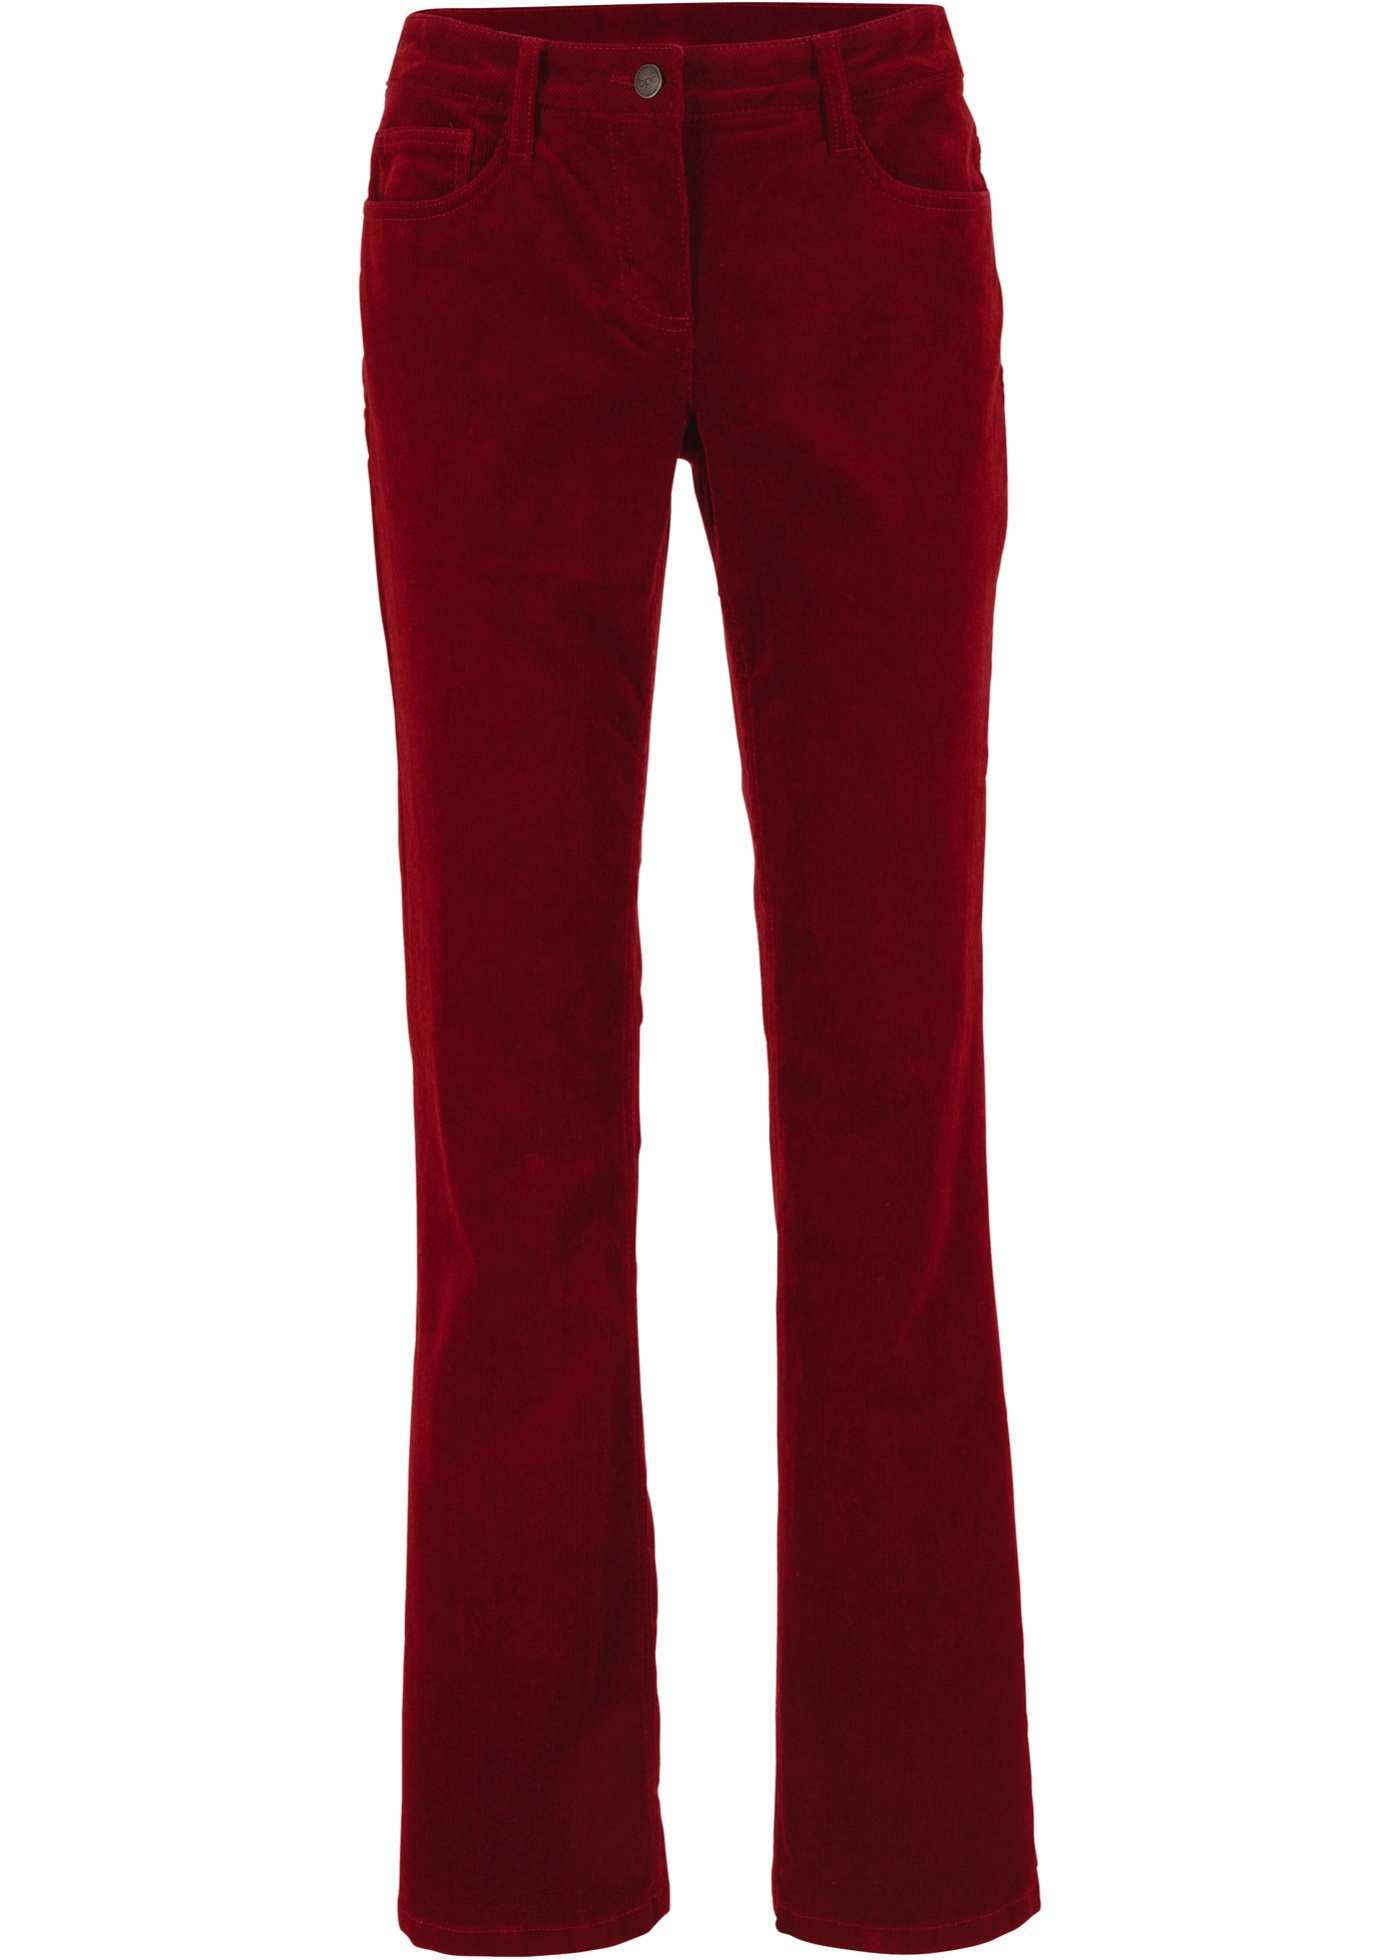 Pantalon stretch confortable en velours côtelé, Bootcut - rouge ...